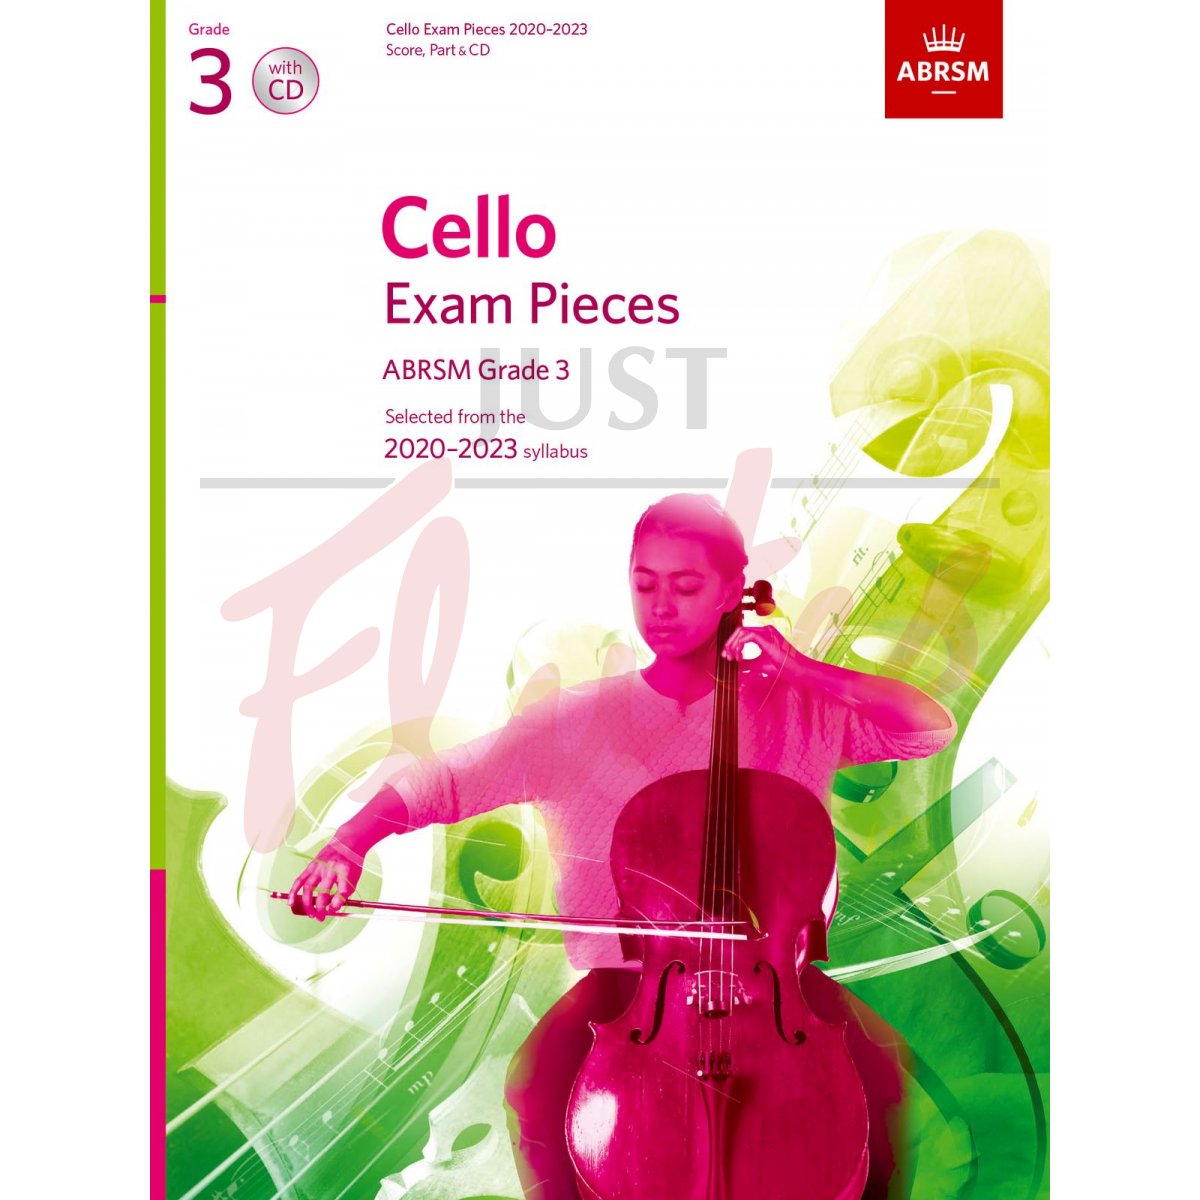 Cello Exam Pieces 2020-2023, Grade 3